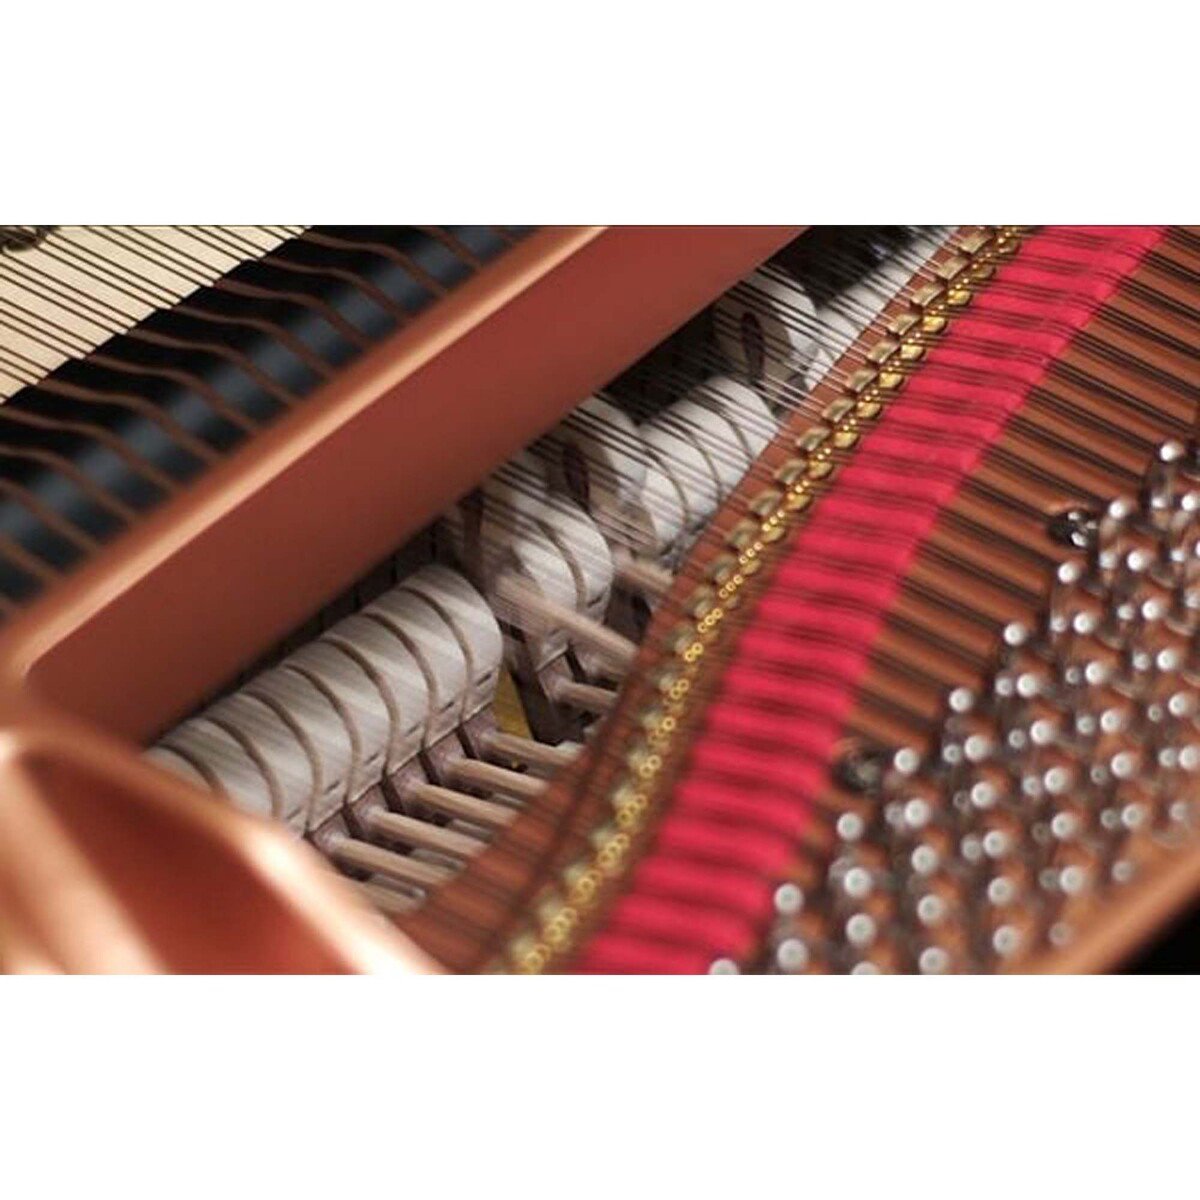 ياماها كلافينوفا بيانو رقمي CLP-745 لوحة مفاتيح خشبية جراند تاتش-إس، 38 صوت بما في ذلك صوت CFX و Boesendorfer، 20 نمط إيقاع، 16 مسار تسجيل، أسود